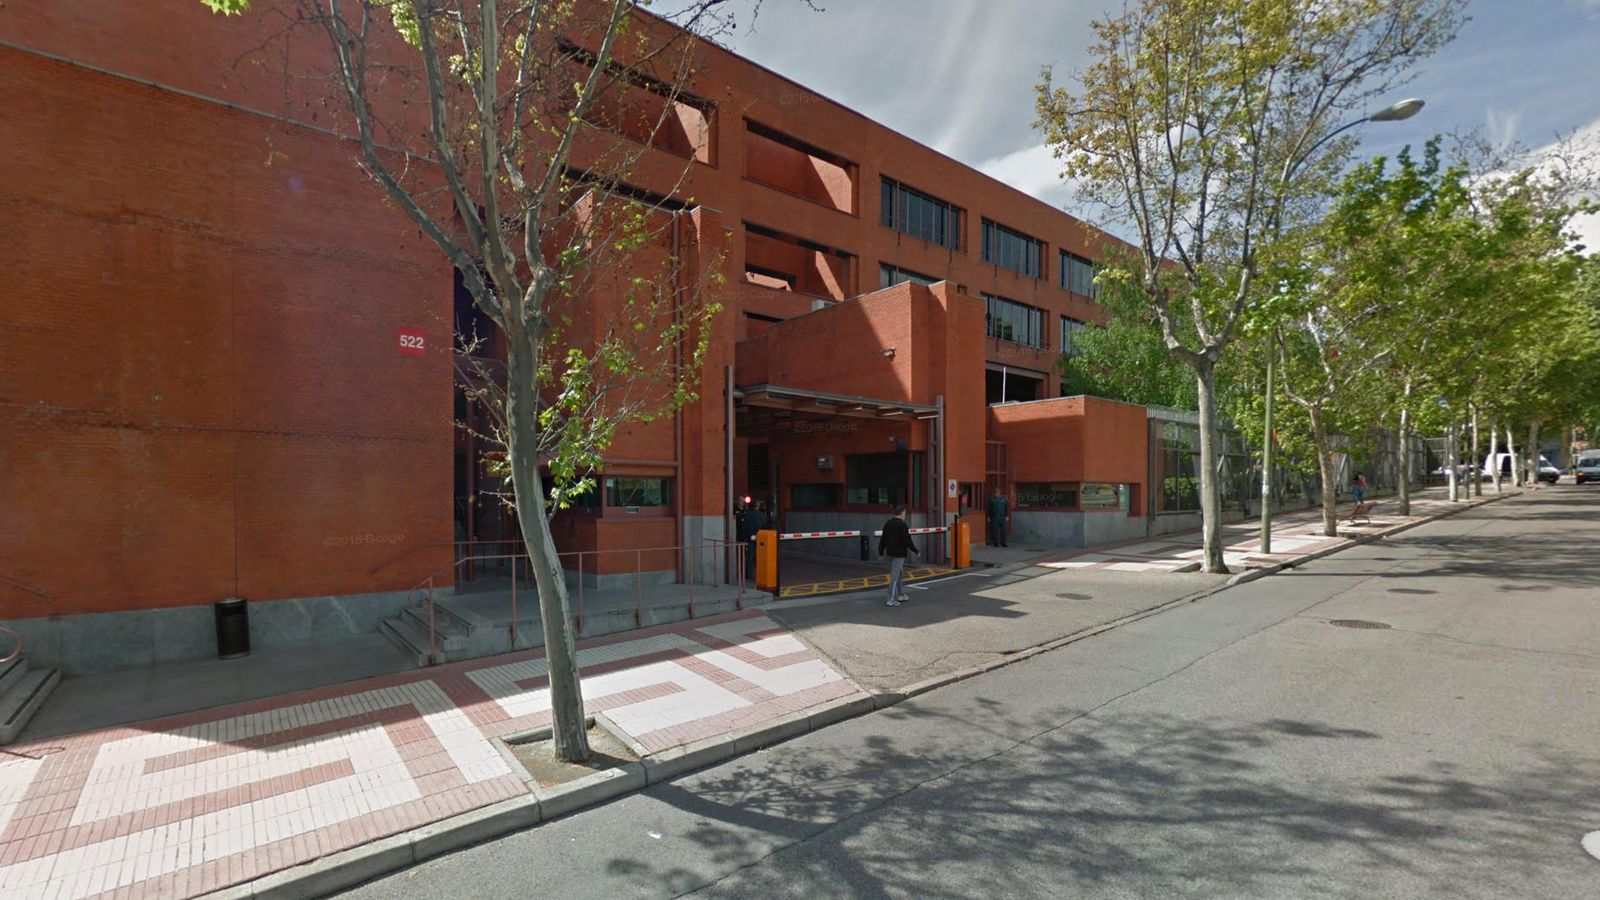 Foto: Central logística del BdE situada en el número 522 de la calle Alcalá de Madrid. (Google Maps)